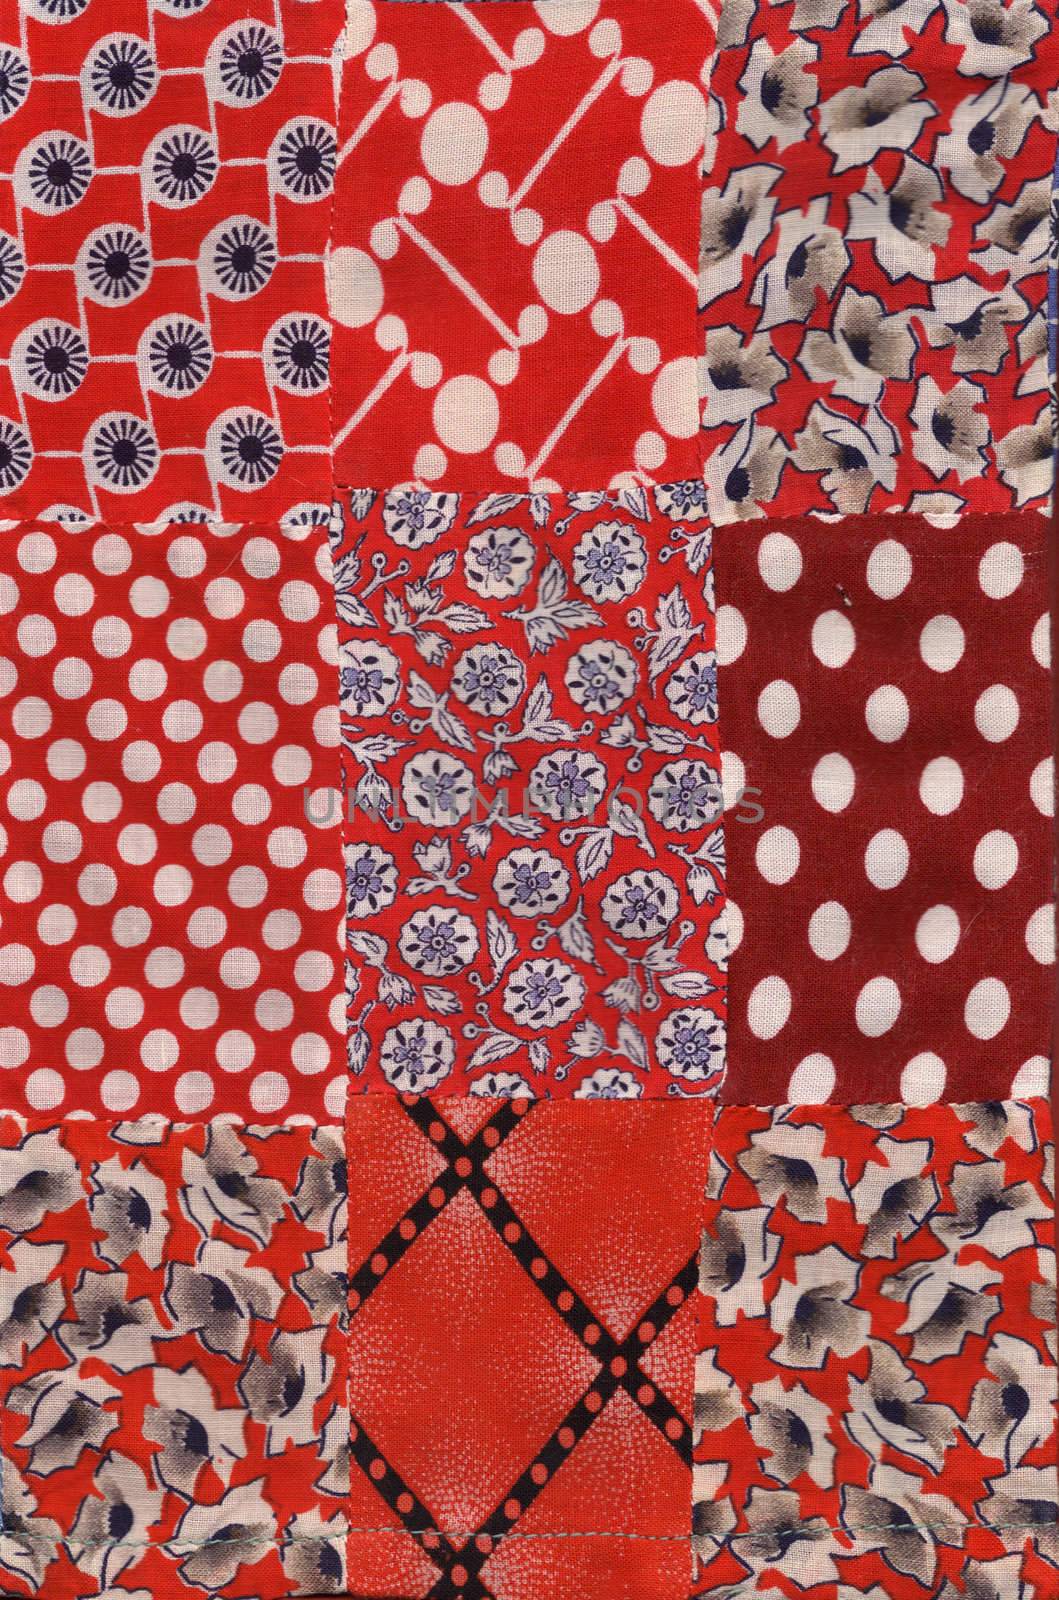 red quilt pattern by vergasova